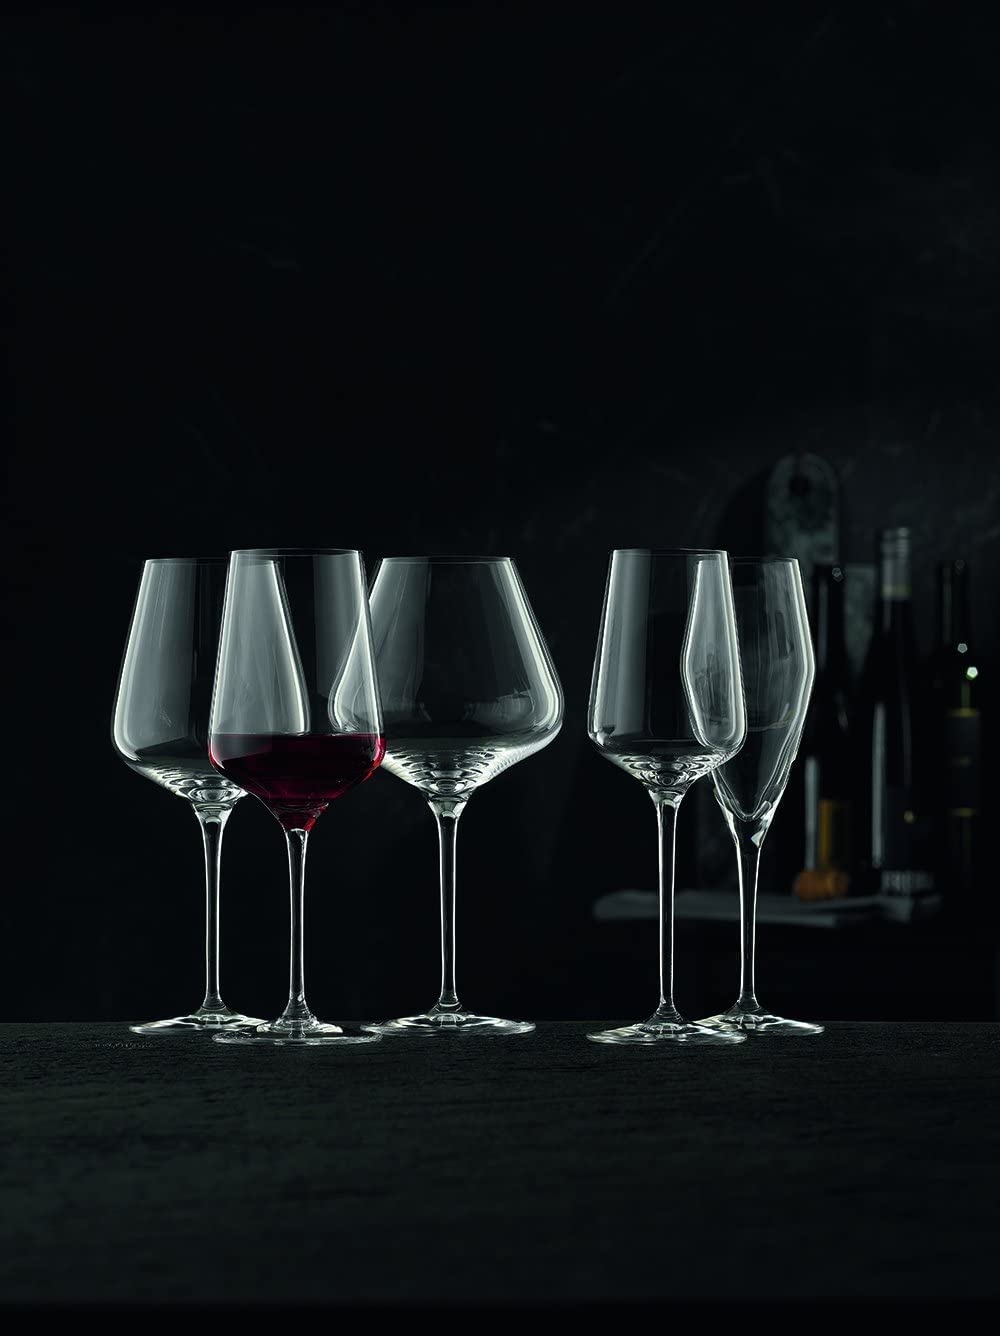 Nachtmann Vinova Redwine Megnum Glass Set of 4